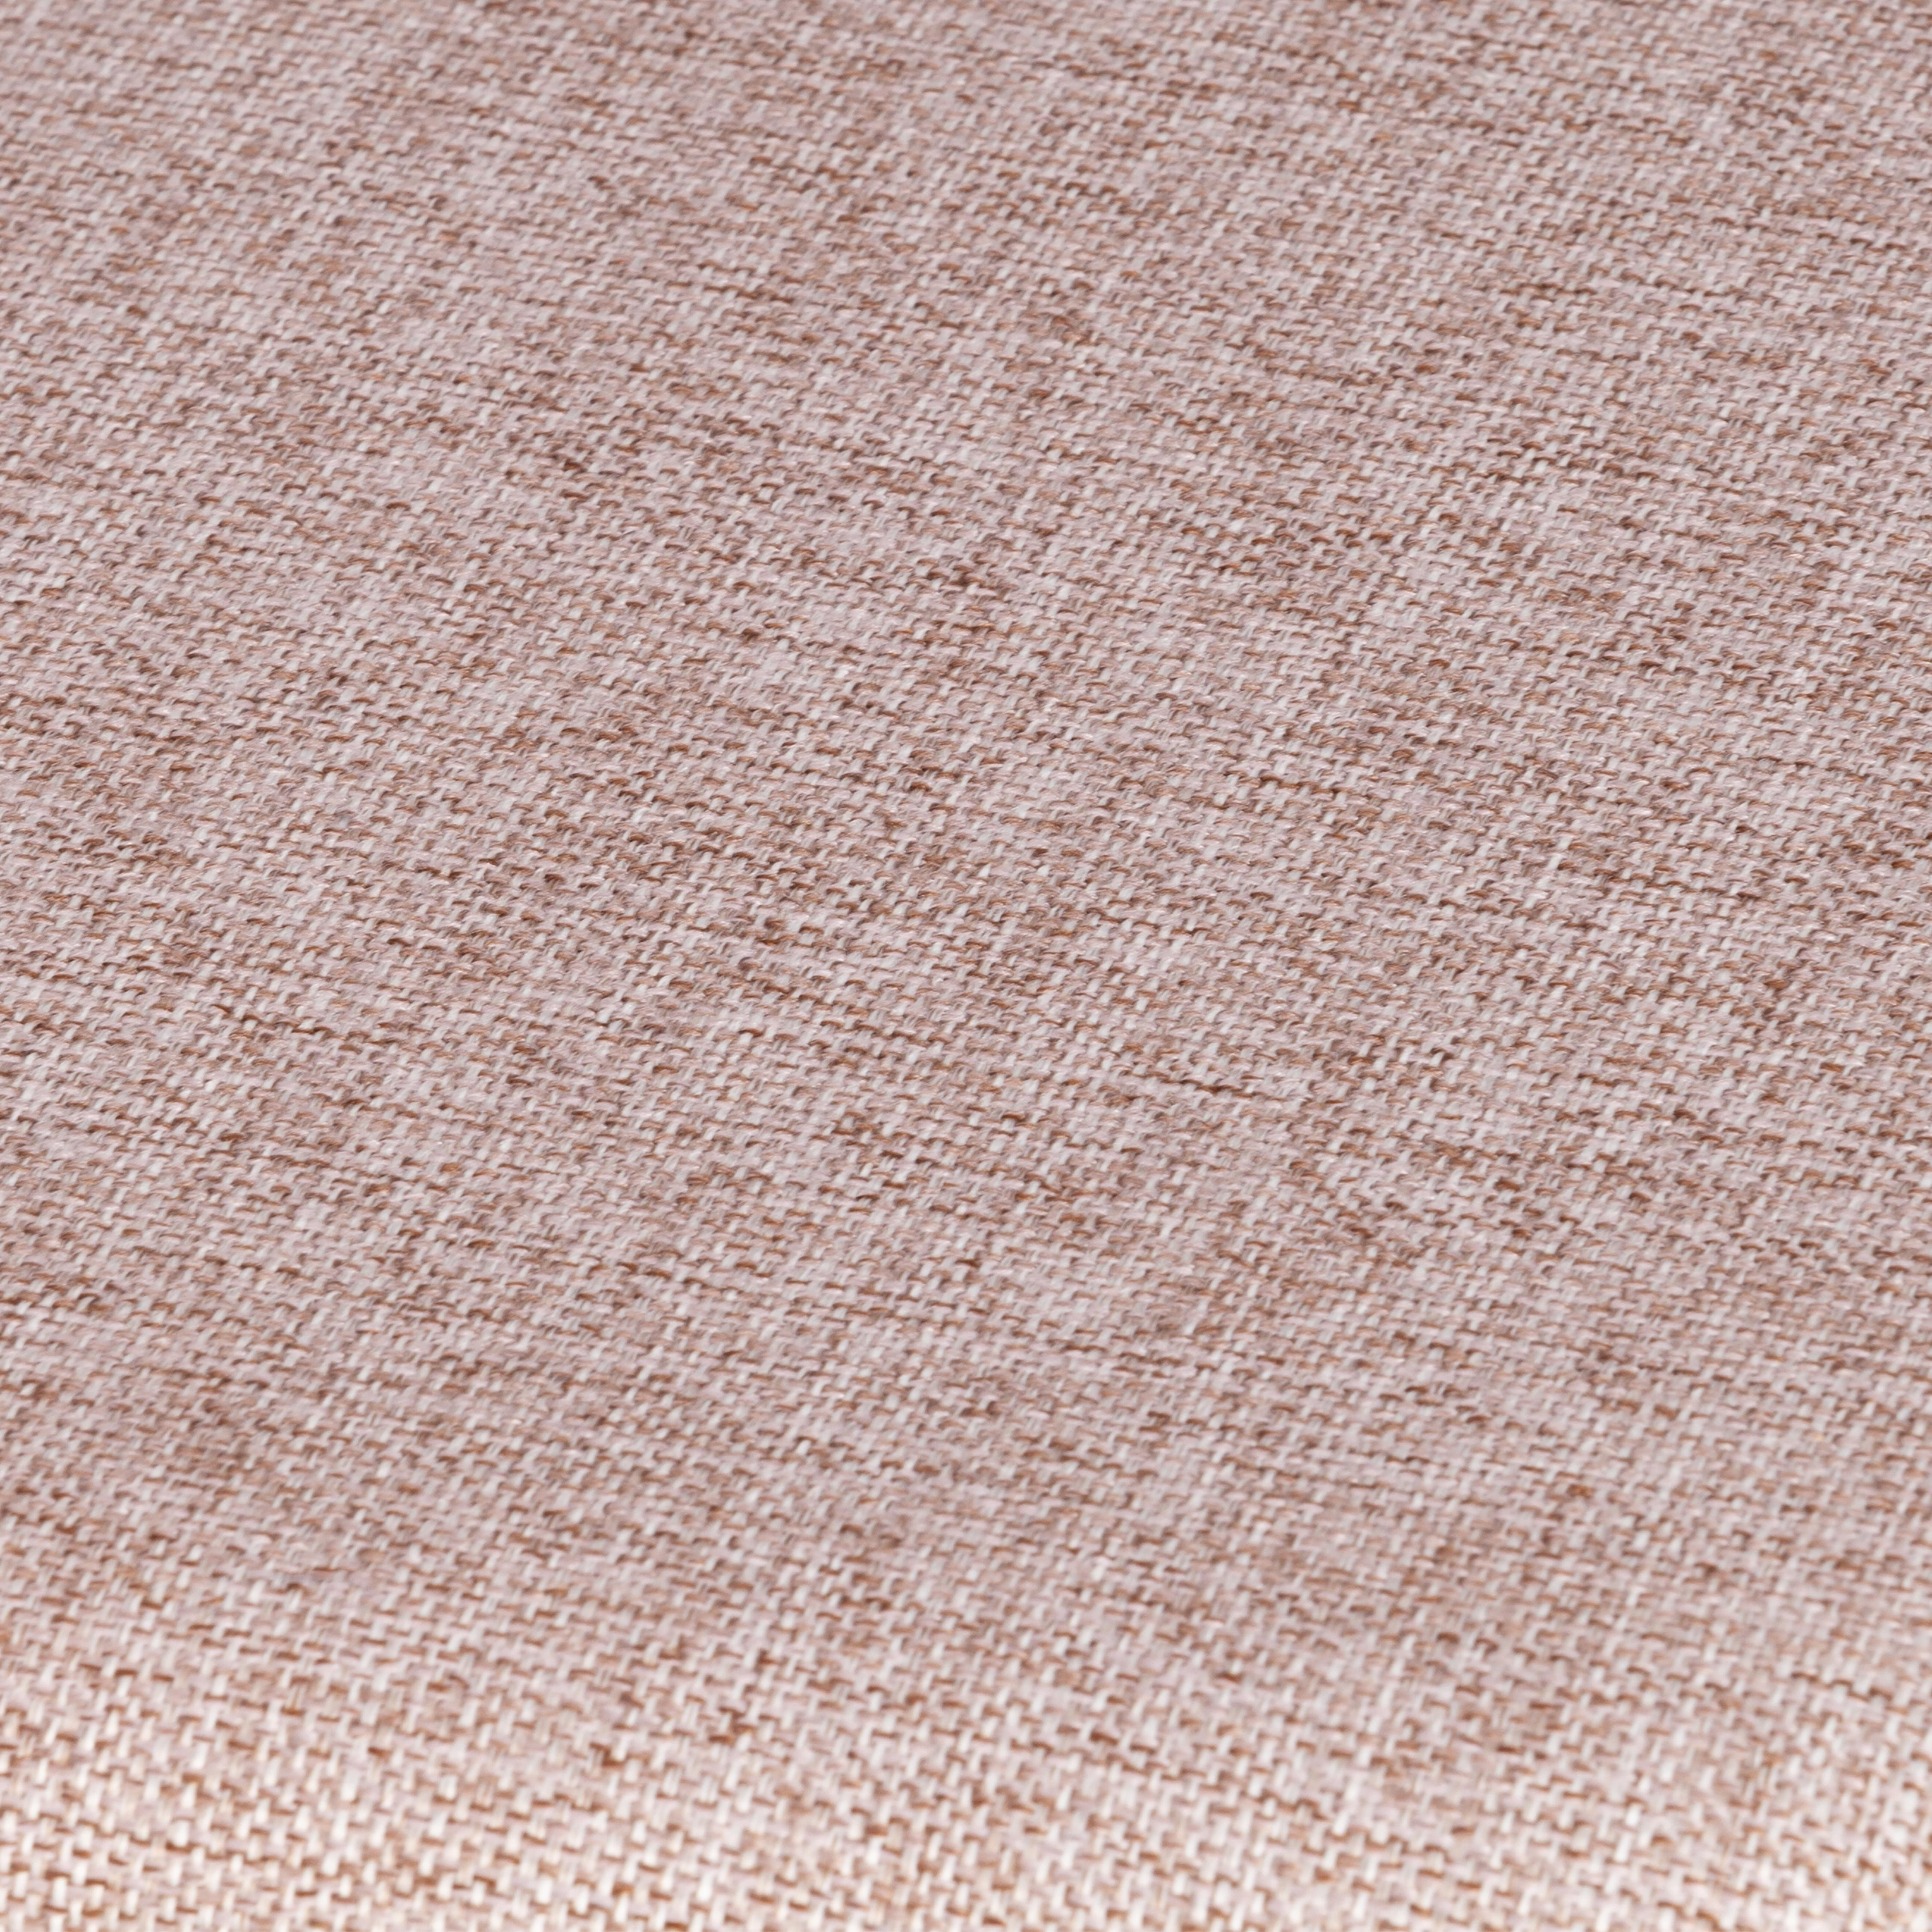 Стул DIAMANTE мягкое сидение бук, 42x42x85см, коричневый, ткань wool caramel, бежевый